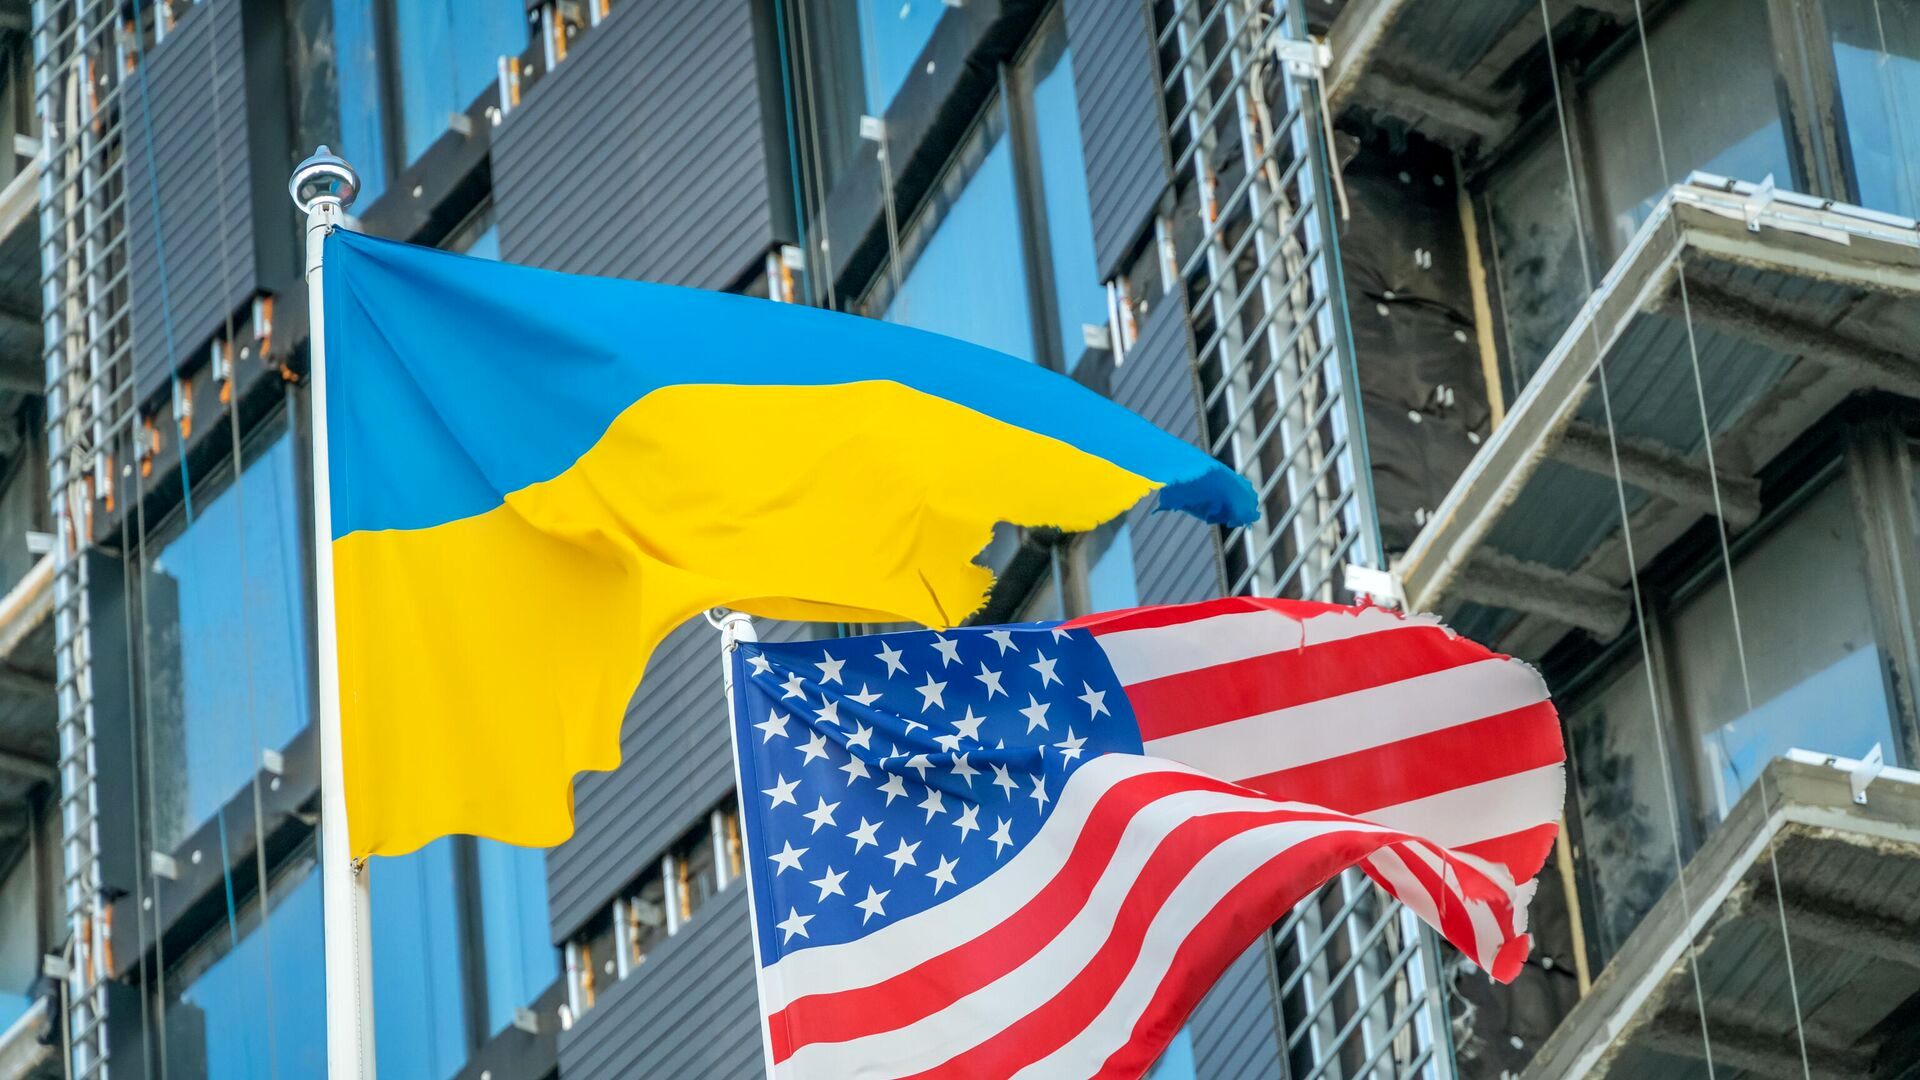 بسته جدید حمایتی آمریکا برای اوکراین/جزئیات دیدار کامالا هریس و زلنسکی